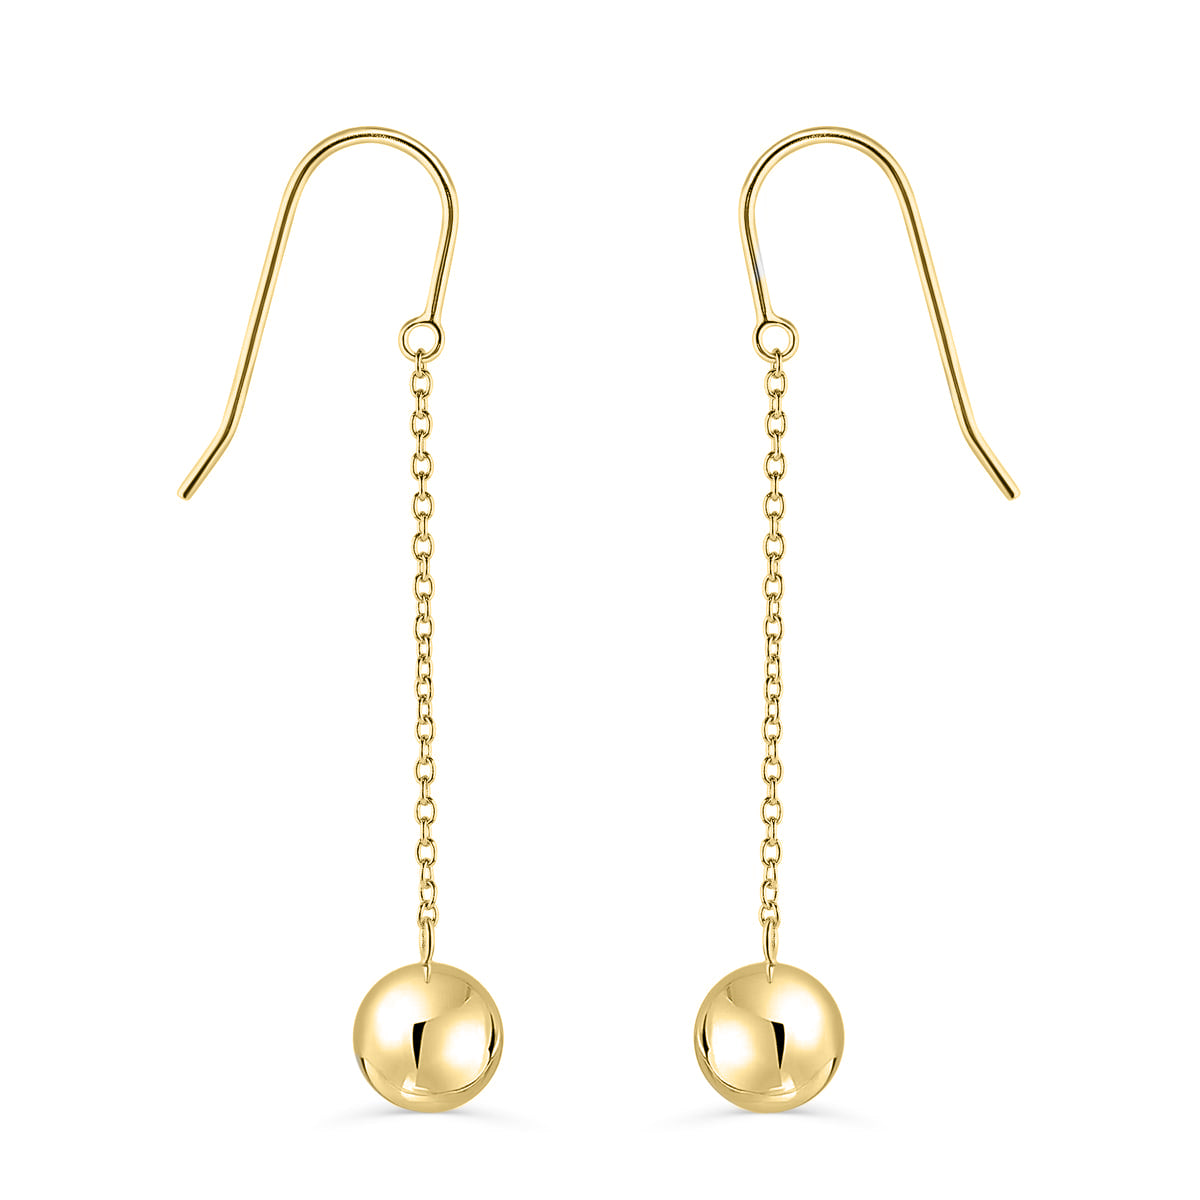 Dangling gold ball earrings